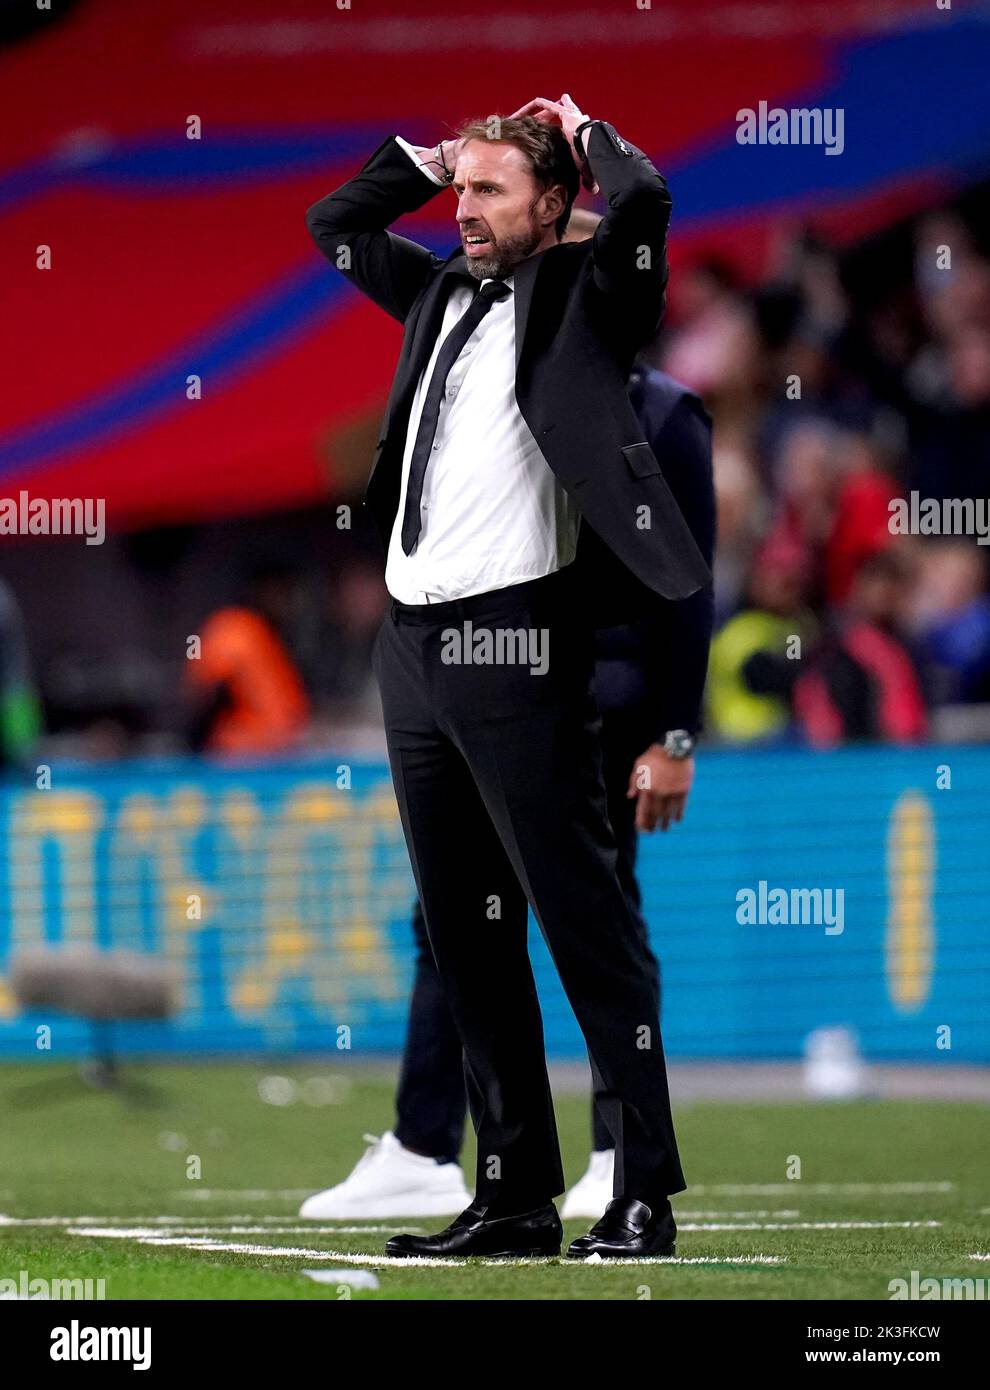 El entrenador de Inglaterra Gareth Southgate reacciona durante el partido de la Liga de las Naciones de la UEFA en el estadio de Wembley, Londres. Fecha de la foto: Lunes 26 de septiembre de 2022. Foto de stock